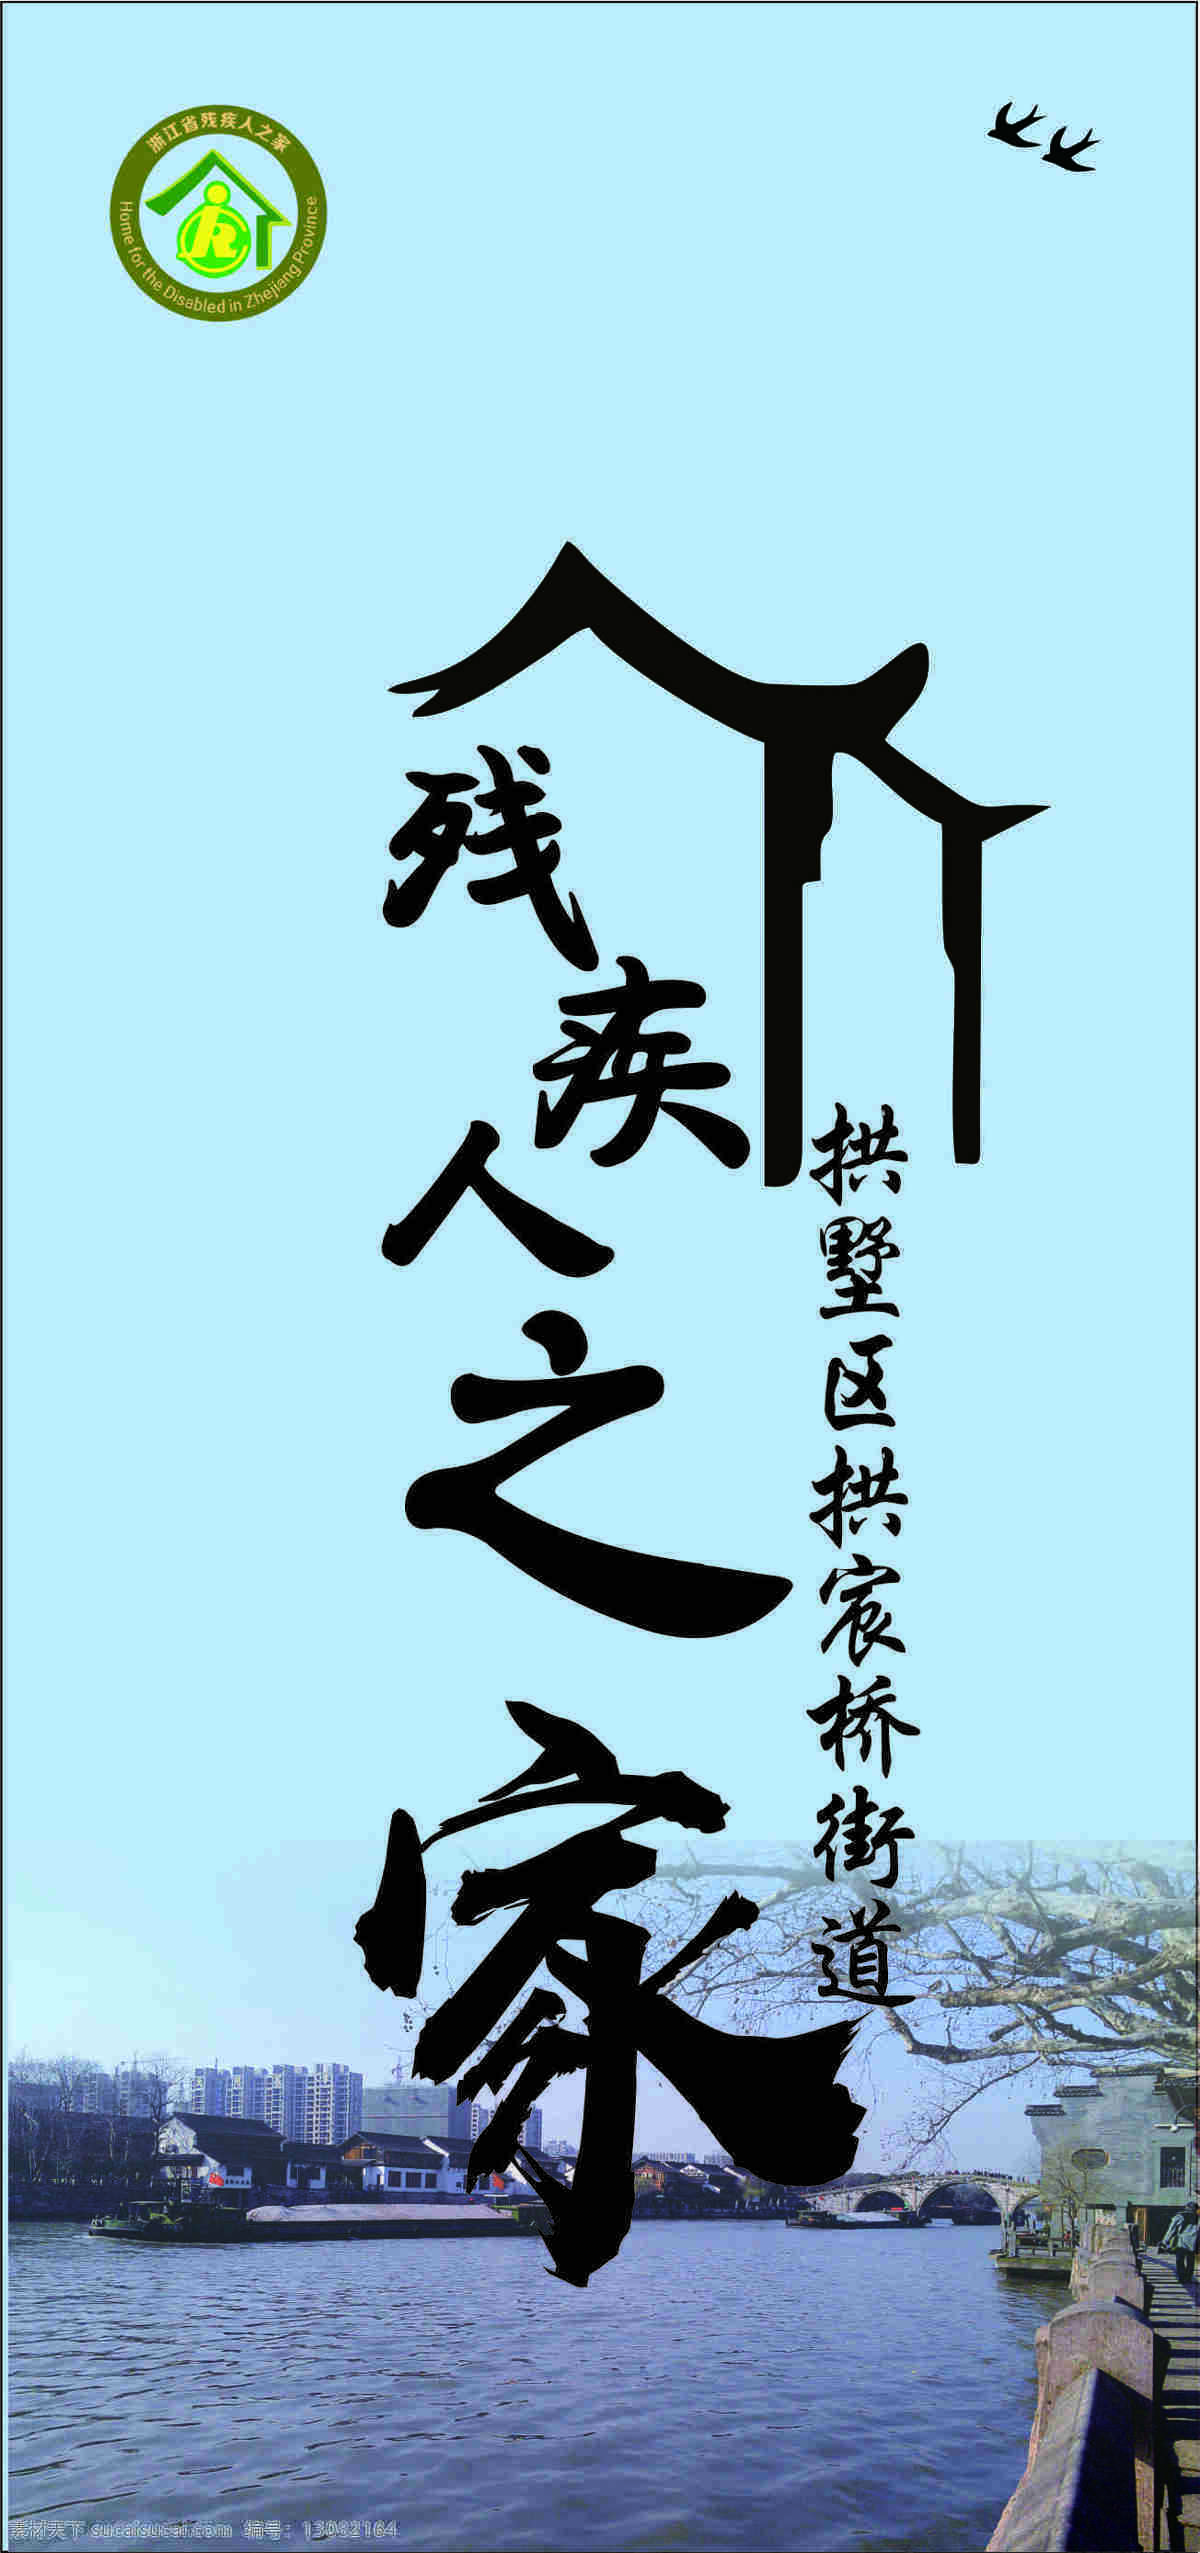 残疾人之家 拱宸桥 标志 设计感 现代 温馨 文化艺术 传统文化